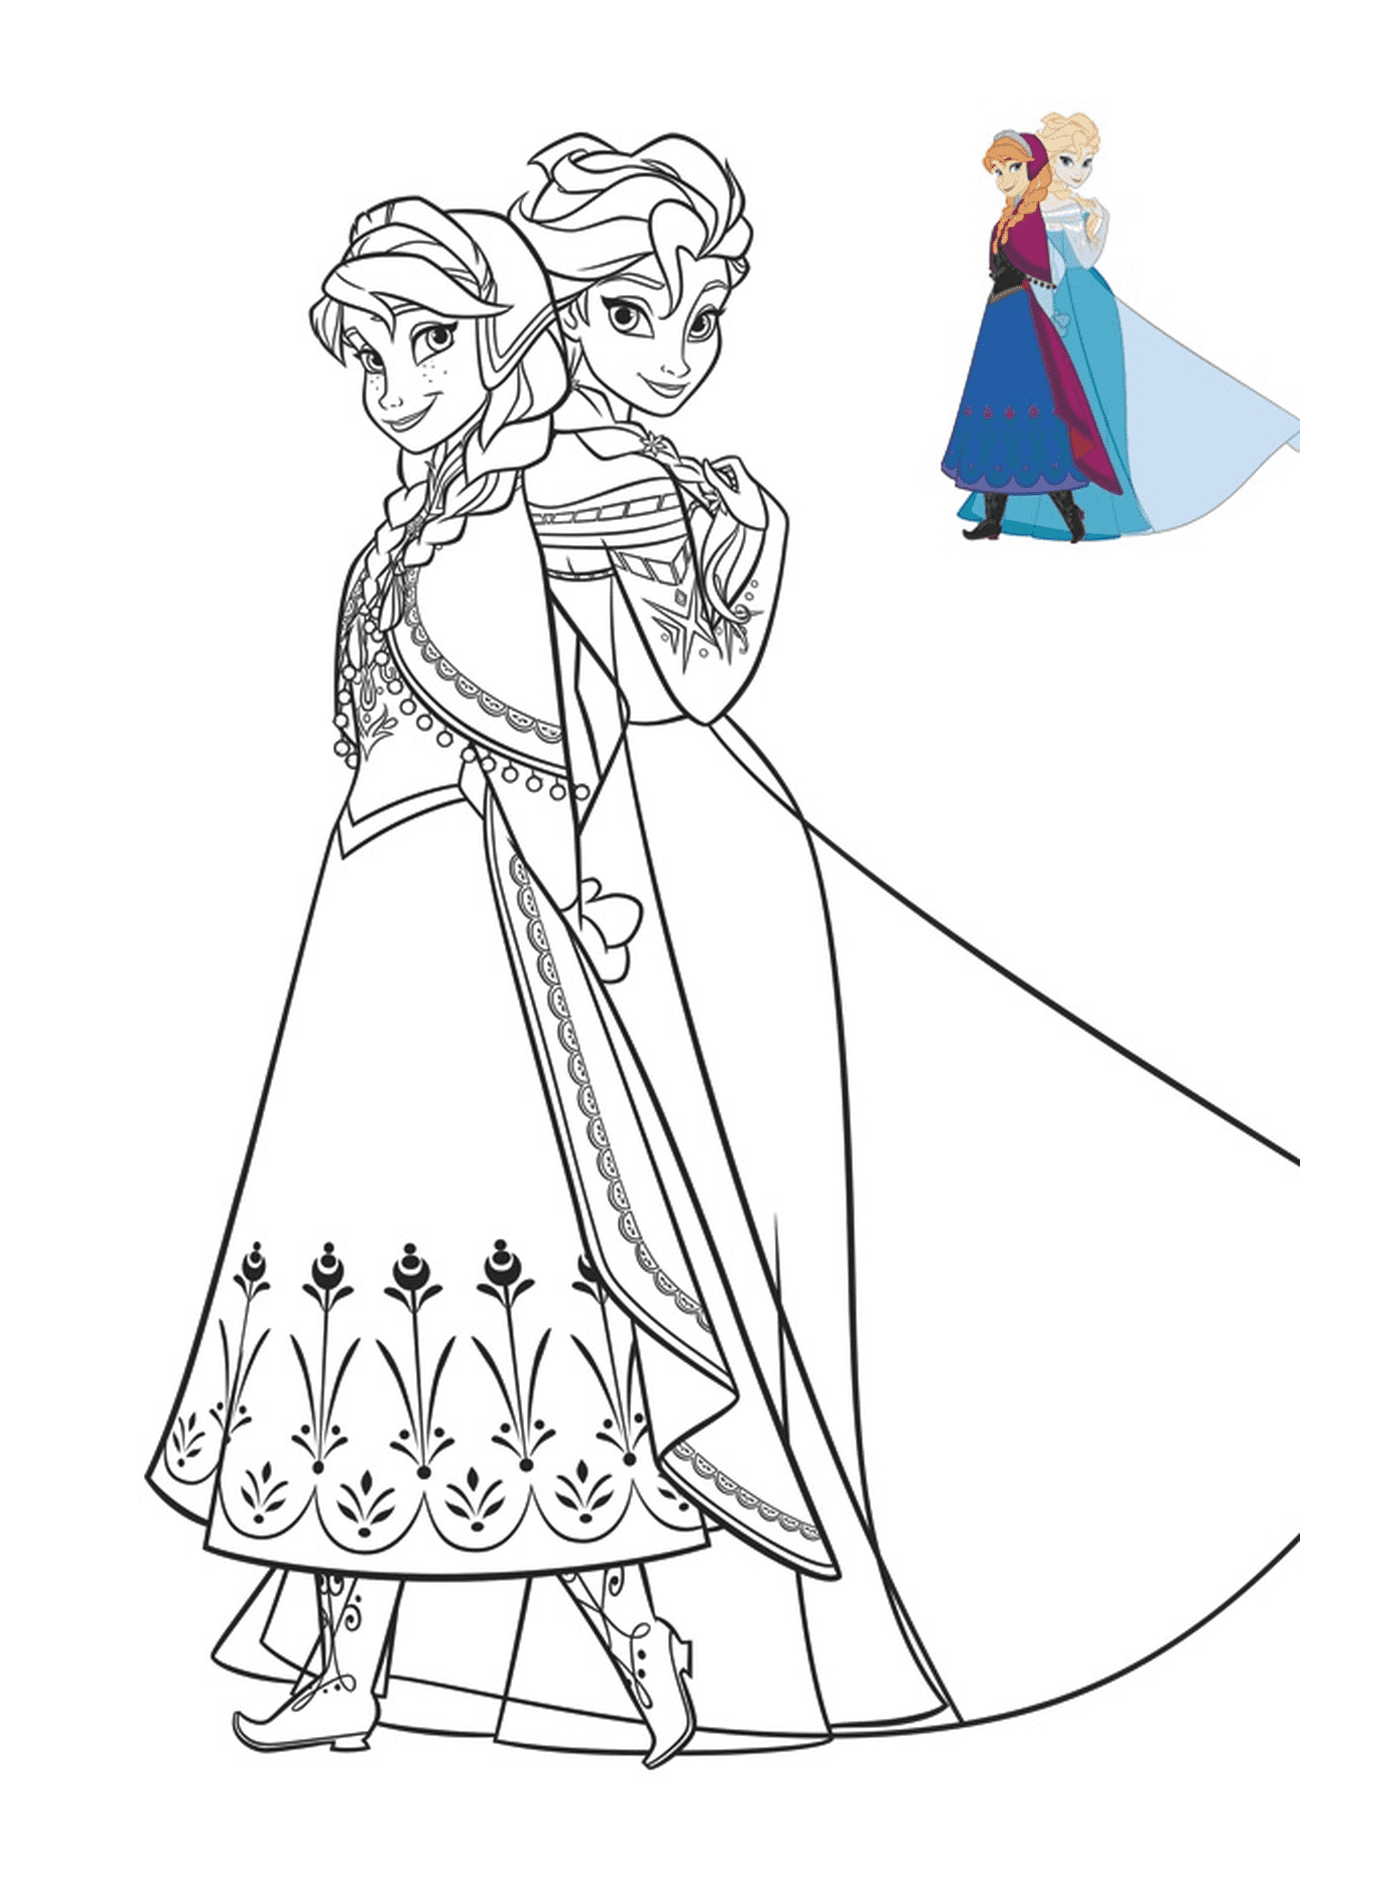  Anna y Elsa en hermosos vestidos 